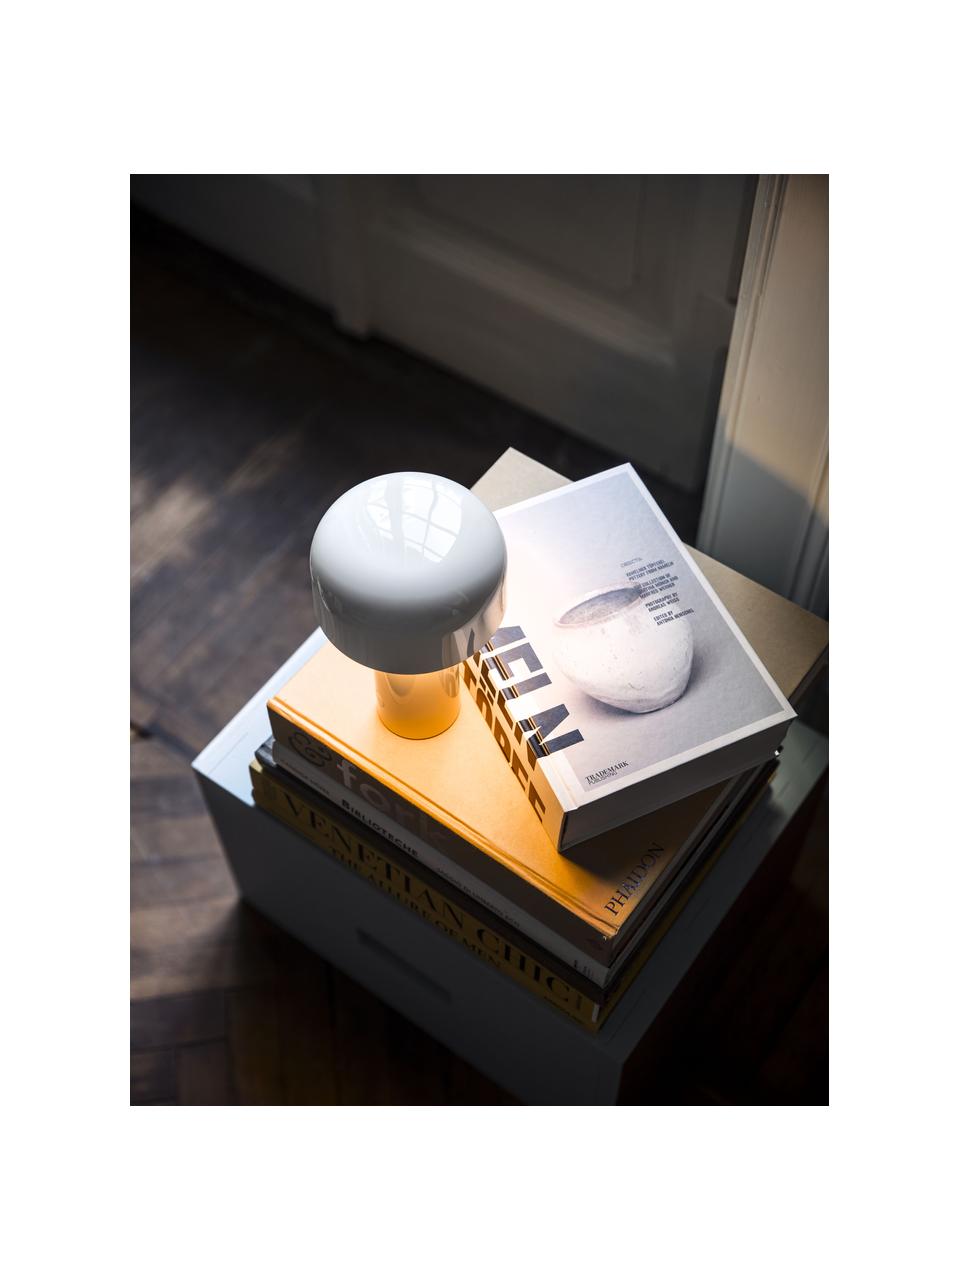 Lampa stołowa LED z funkcją przyciemniania Bellhop, Tworzywo sztuczne, Biały, błyszczący, Ø 13 x W 20 cm